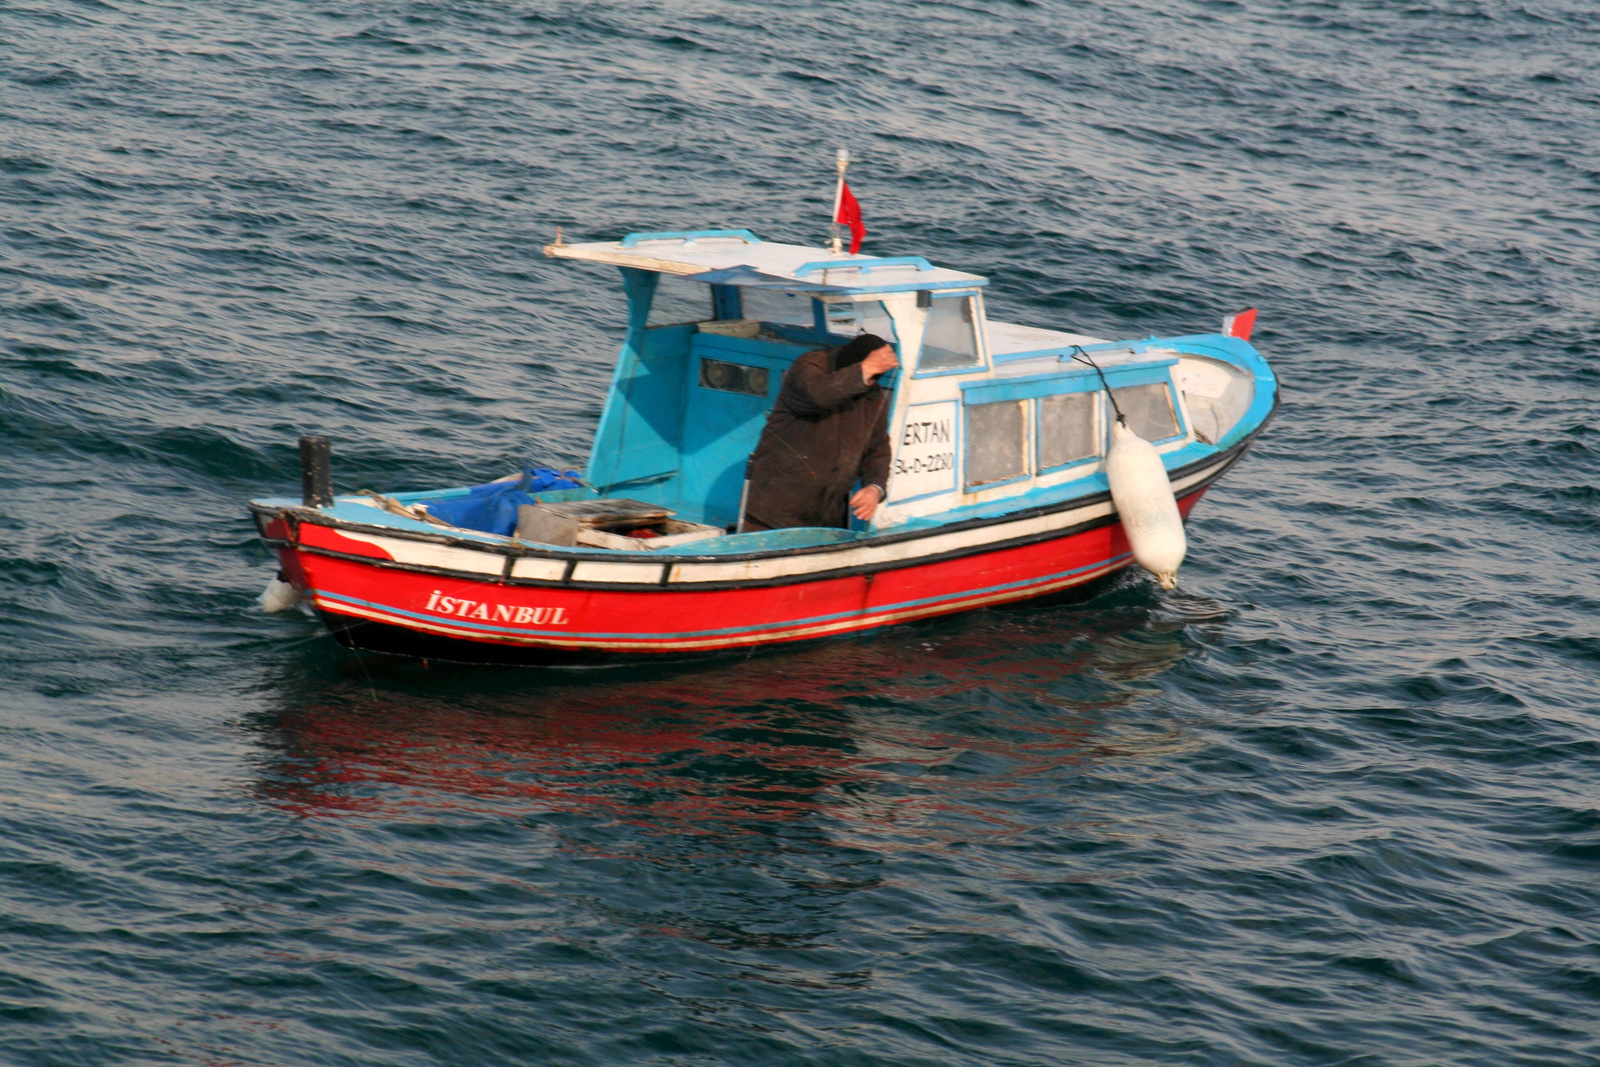 Boszporuszi halász